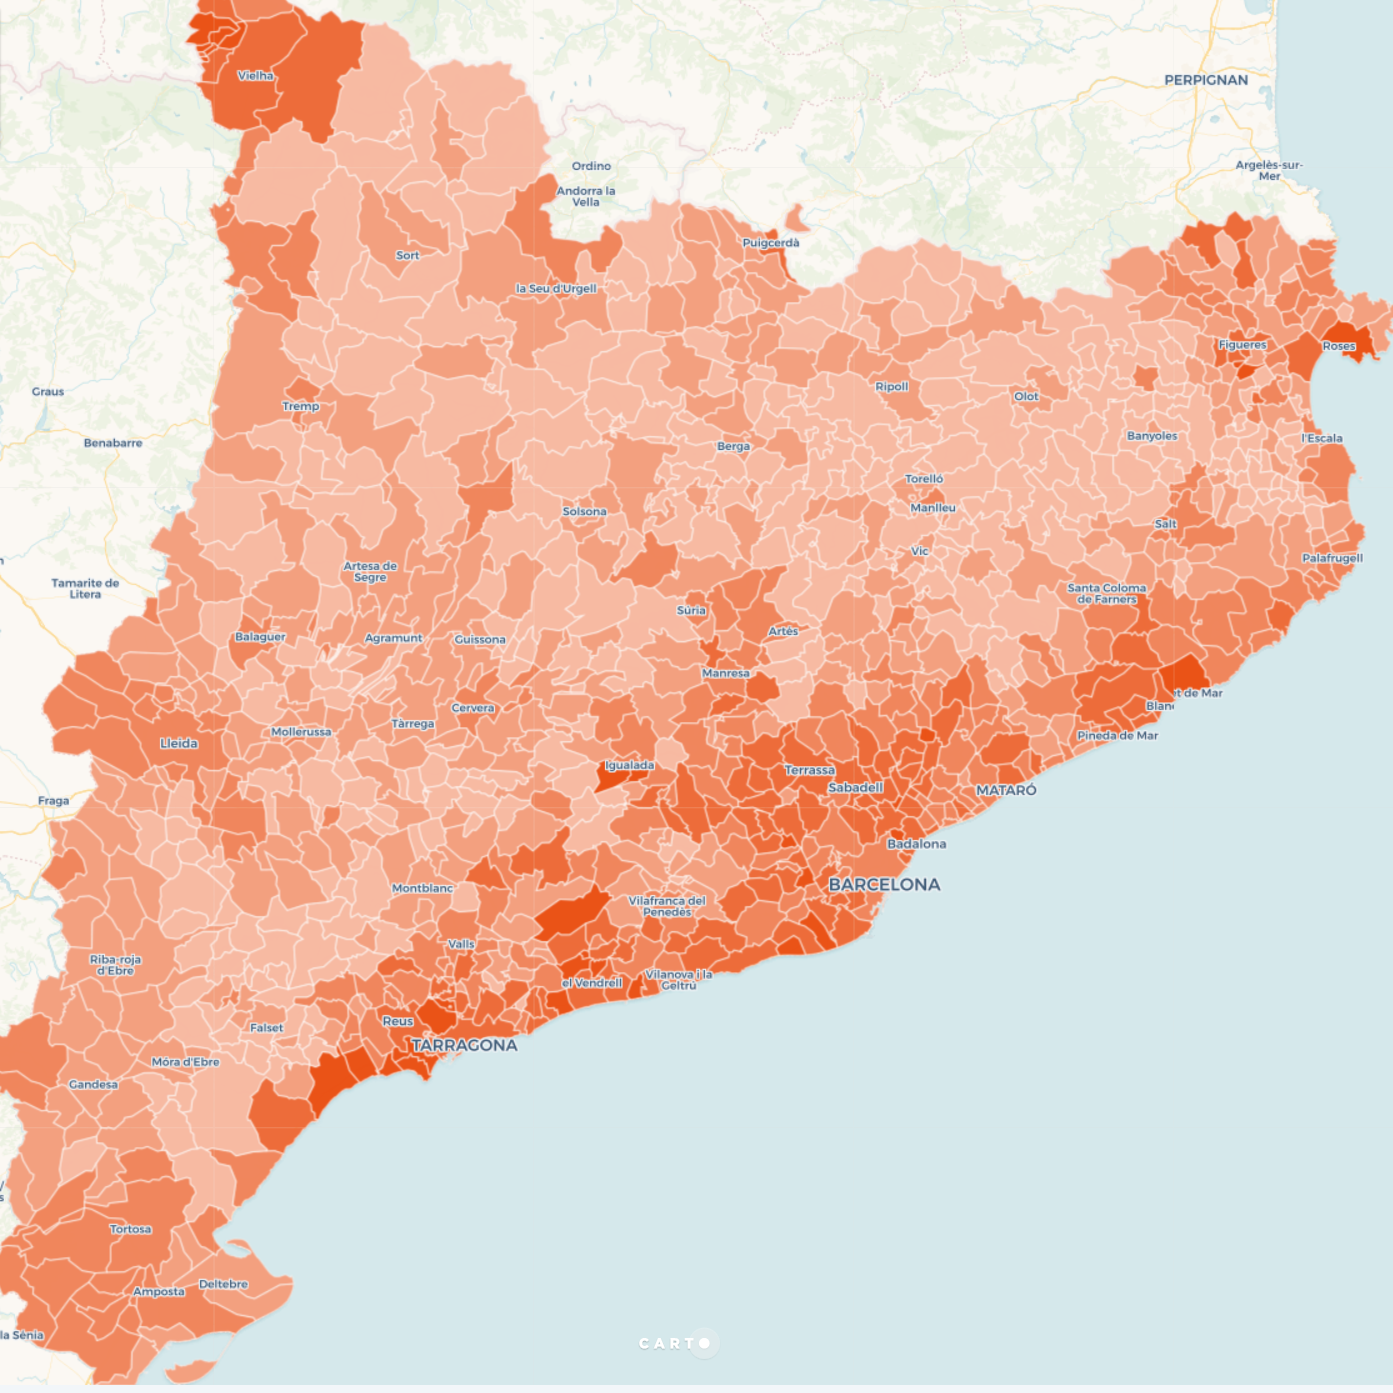 MAPA: La Catalunya que vota Ciudadanos